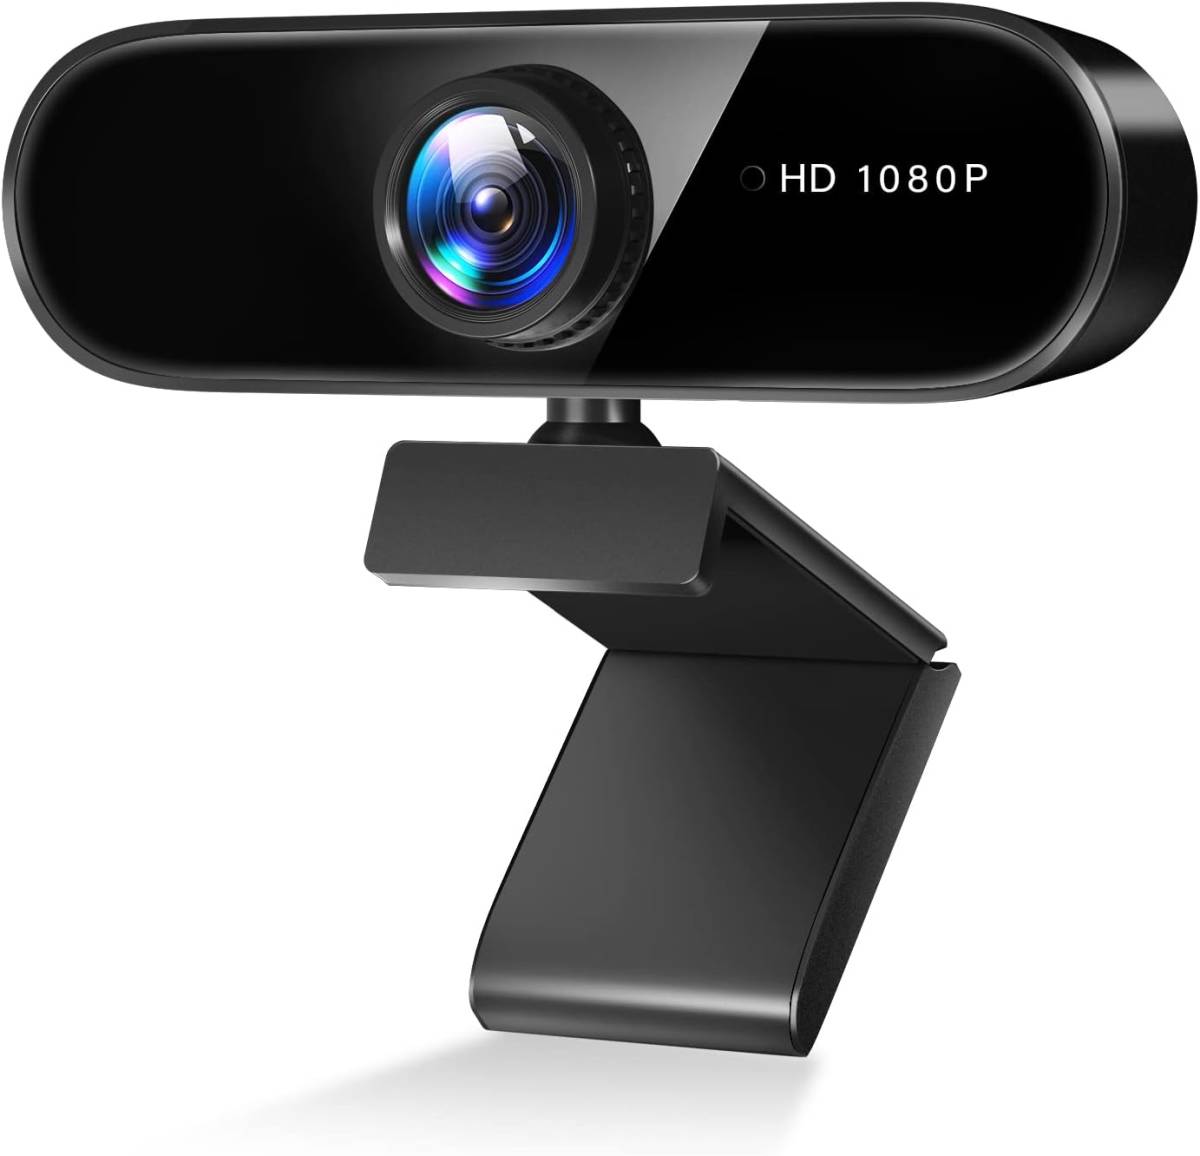 ウェブカメラ フルHD 1080P高 画質 200万画素 マイク内蔵 USBカメラ 自動光補正 30FPS 超広角95° クリップ/スタンド式 U77の画像1